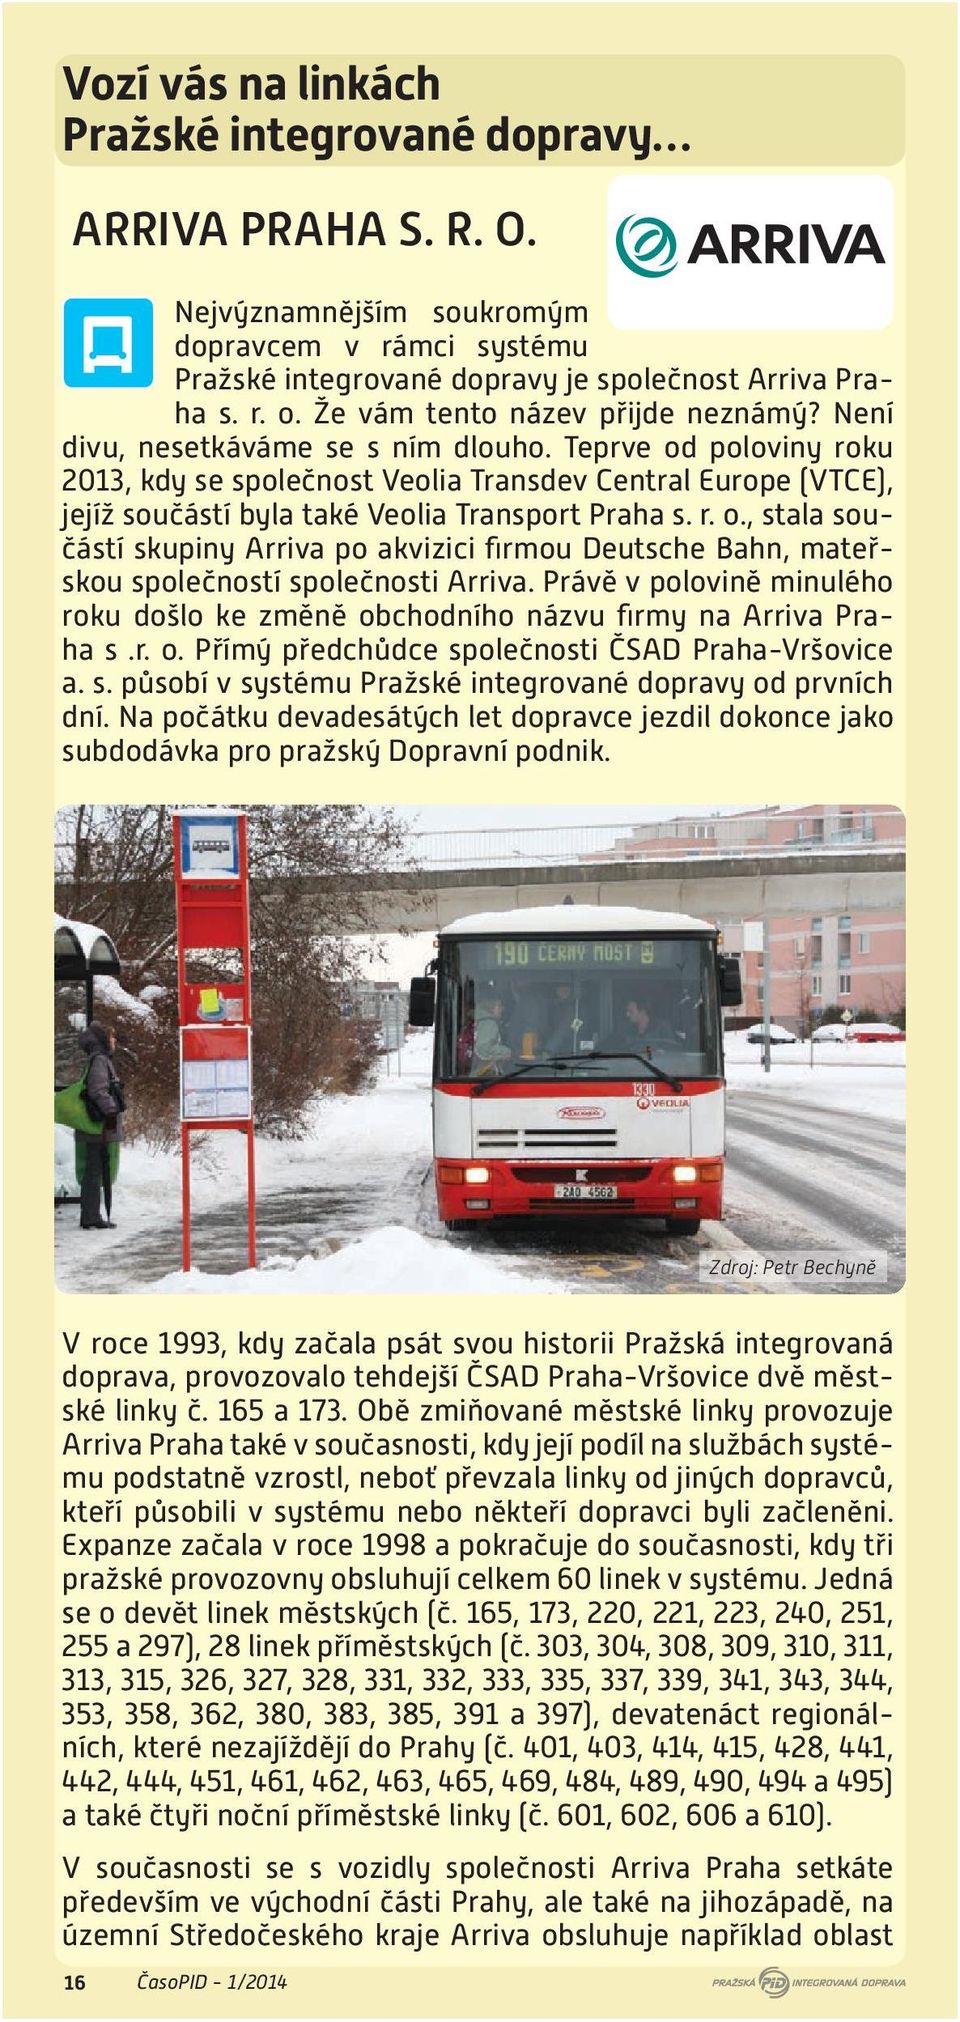 Teprve od poloviny roku 2013, kdy se společnost Veolia Transdev Central Europe (VTCE), jejíž součástí byla také Veolia Transport Praha s. r. o., stala součástí skupiny Arriva po akvizici firmou Deutsche Bahn, mateřskou společností společnosti Arriva.